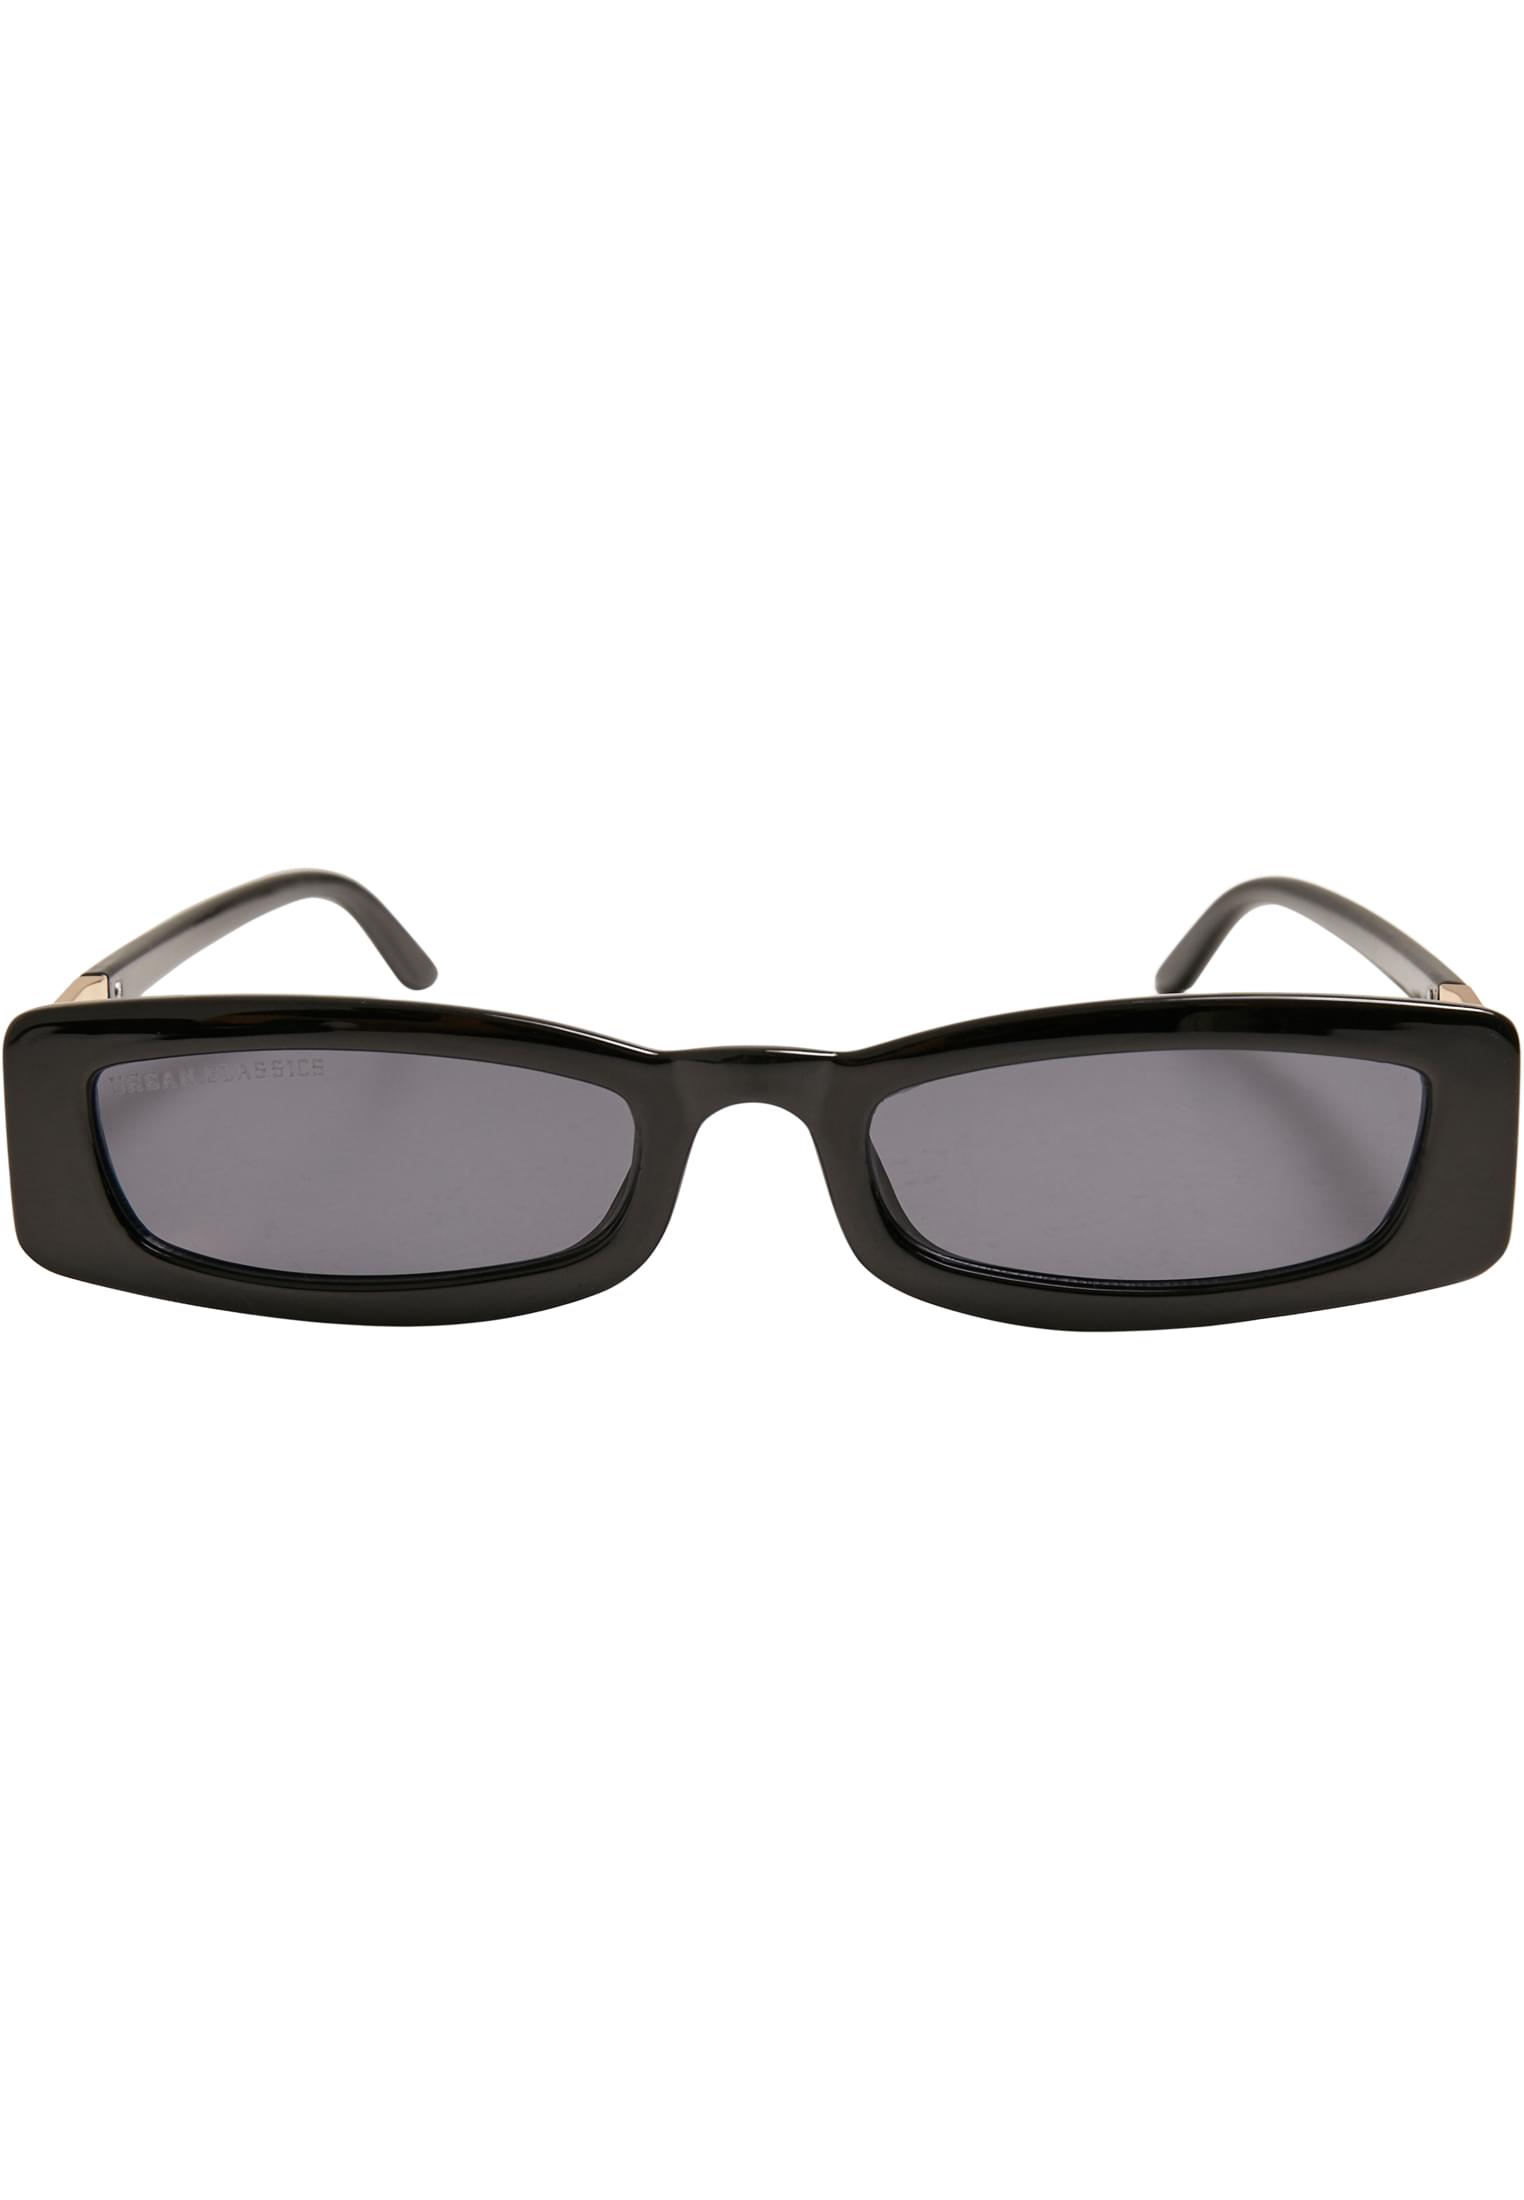 Sonnenbrillen Sunglasses Minicoy in Farbe black